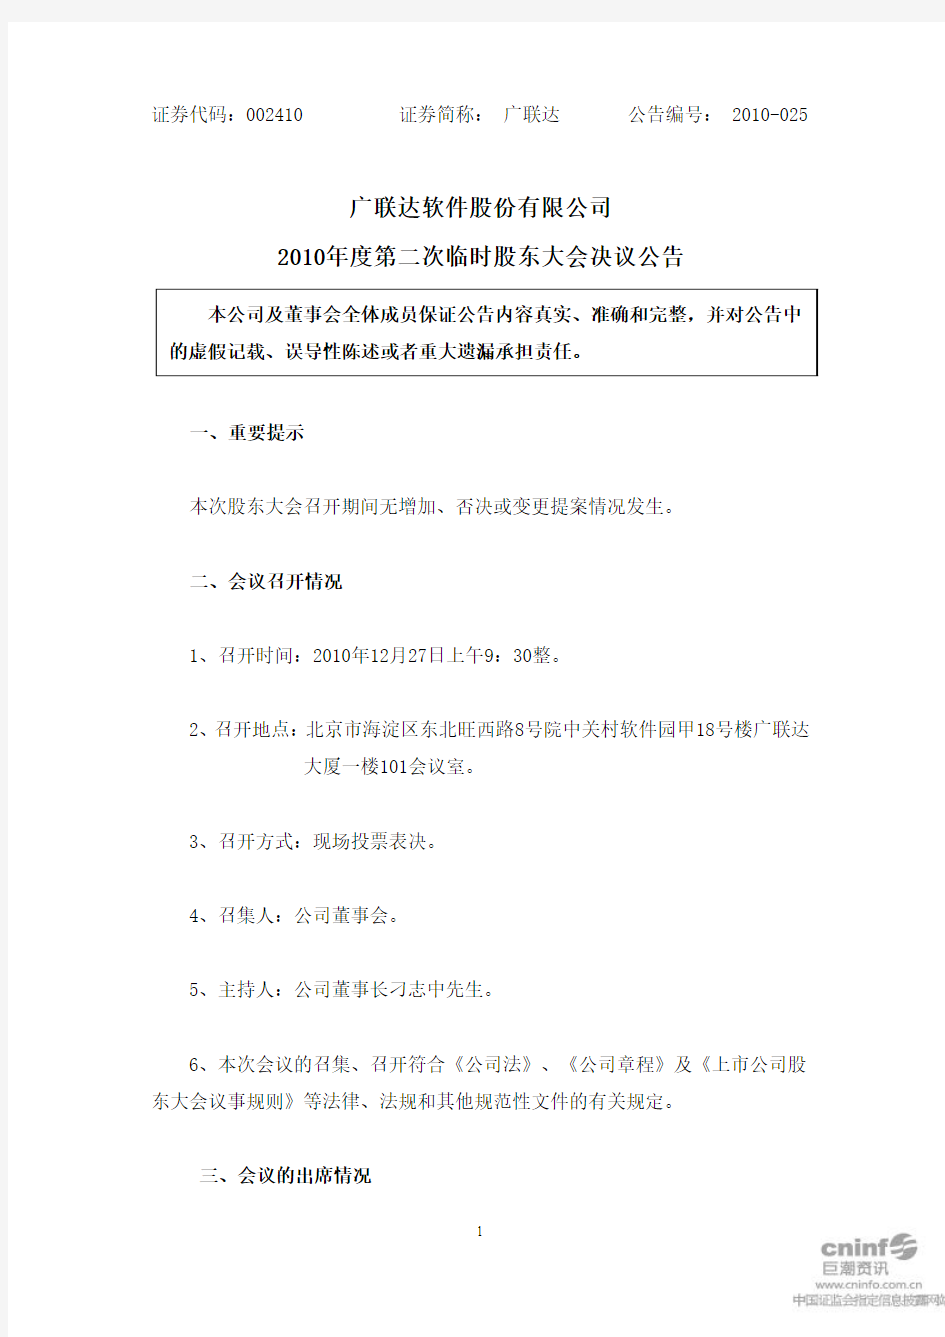 广联达：2010年度第二次临时股东大会决议公告 2010-12-28